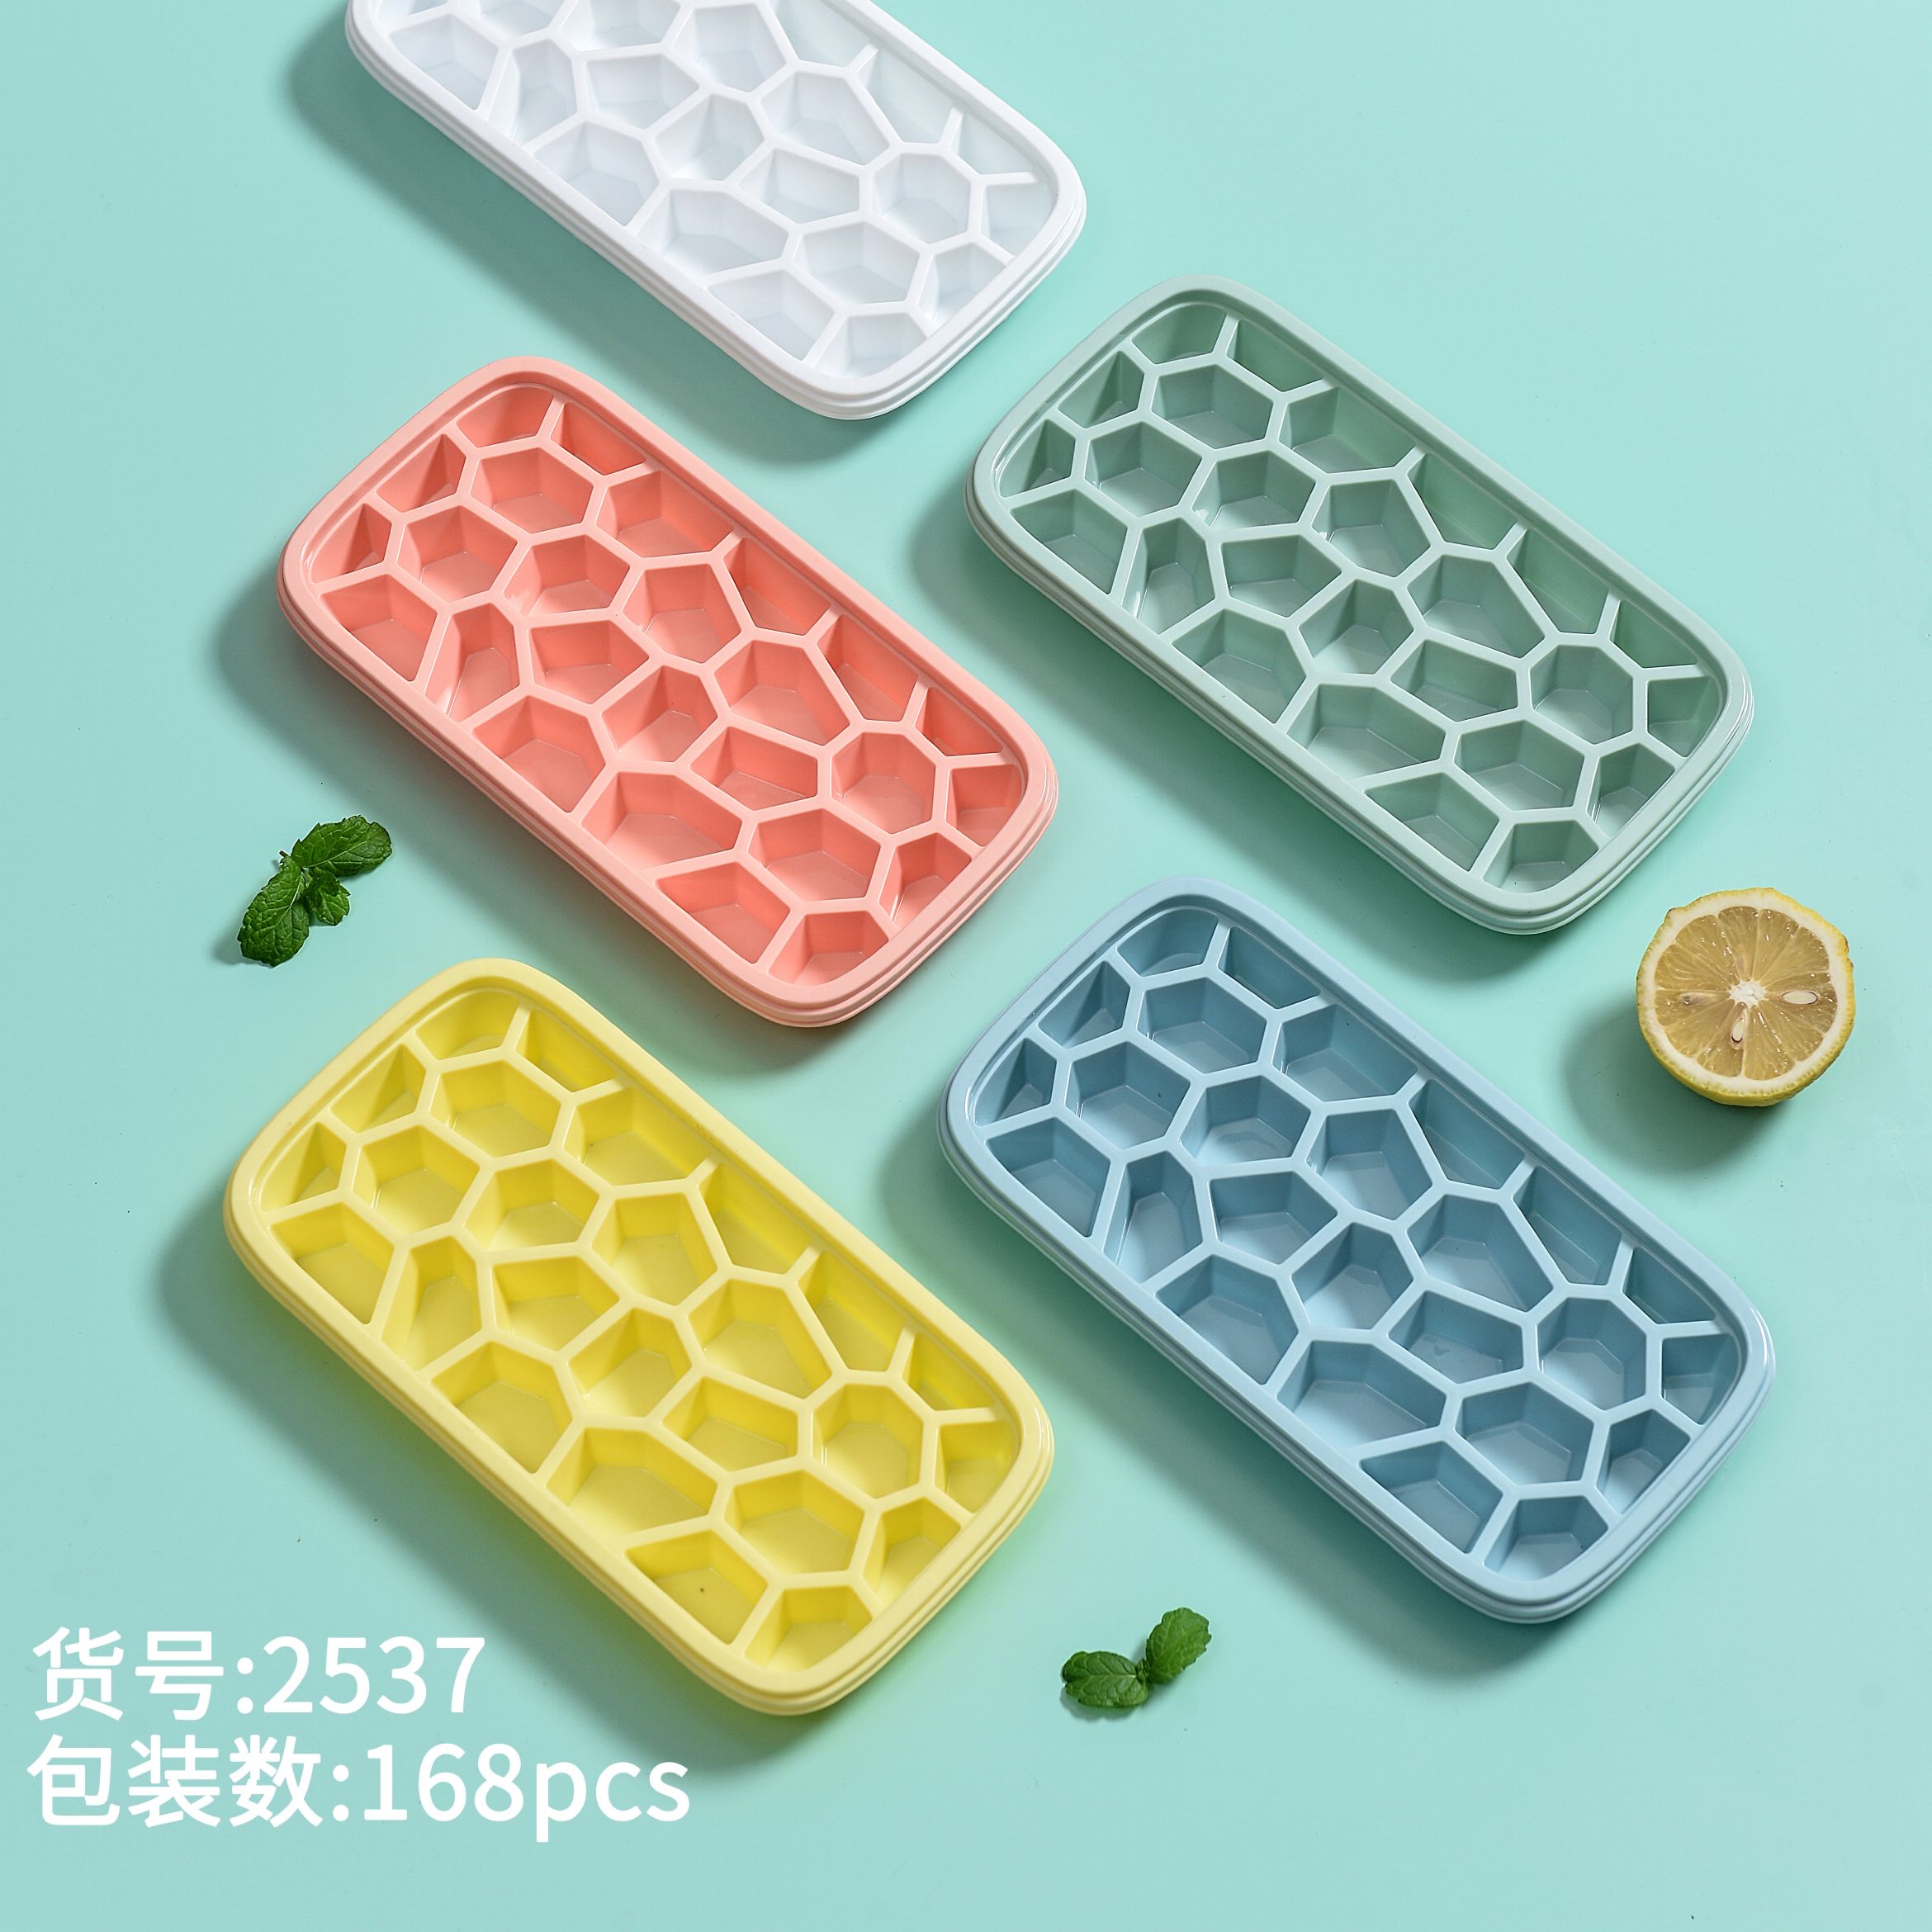 新款冰格塑料冰格彩色环保塑料冰格